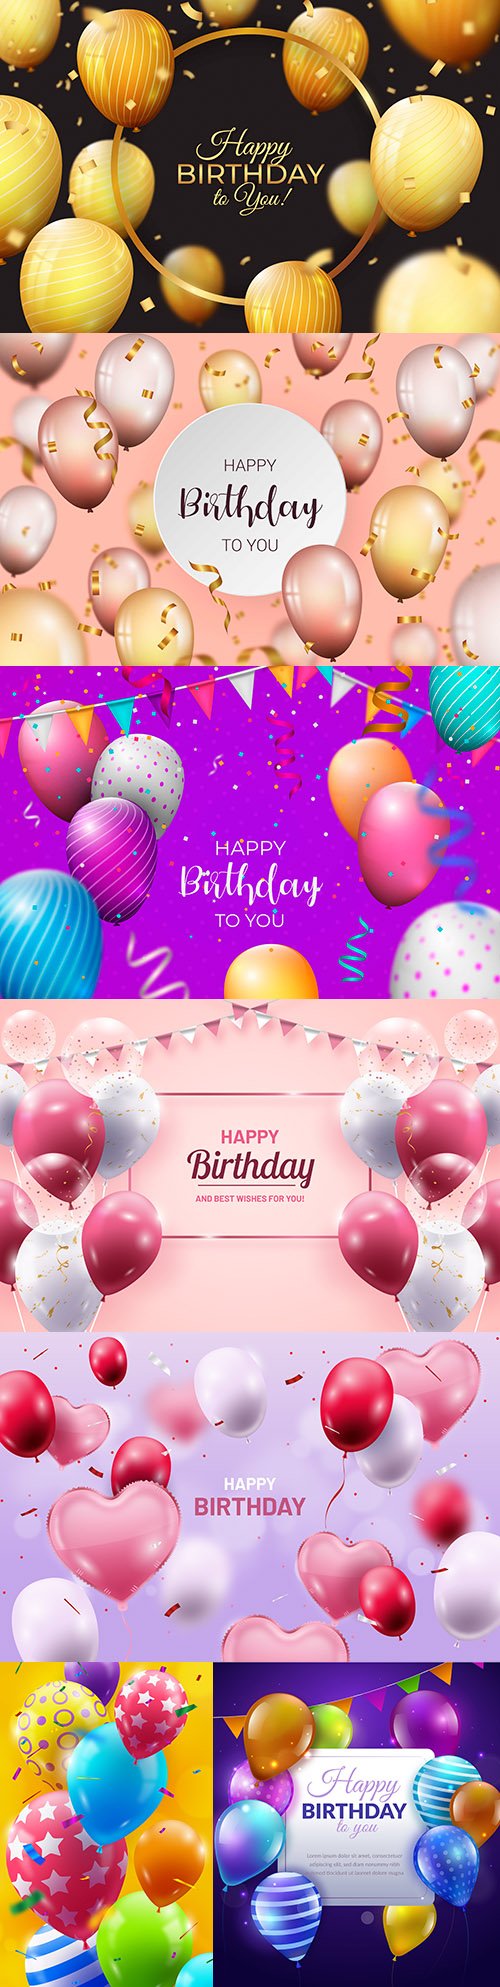 Happy birthday holiday invitation realistic balloons 8